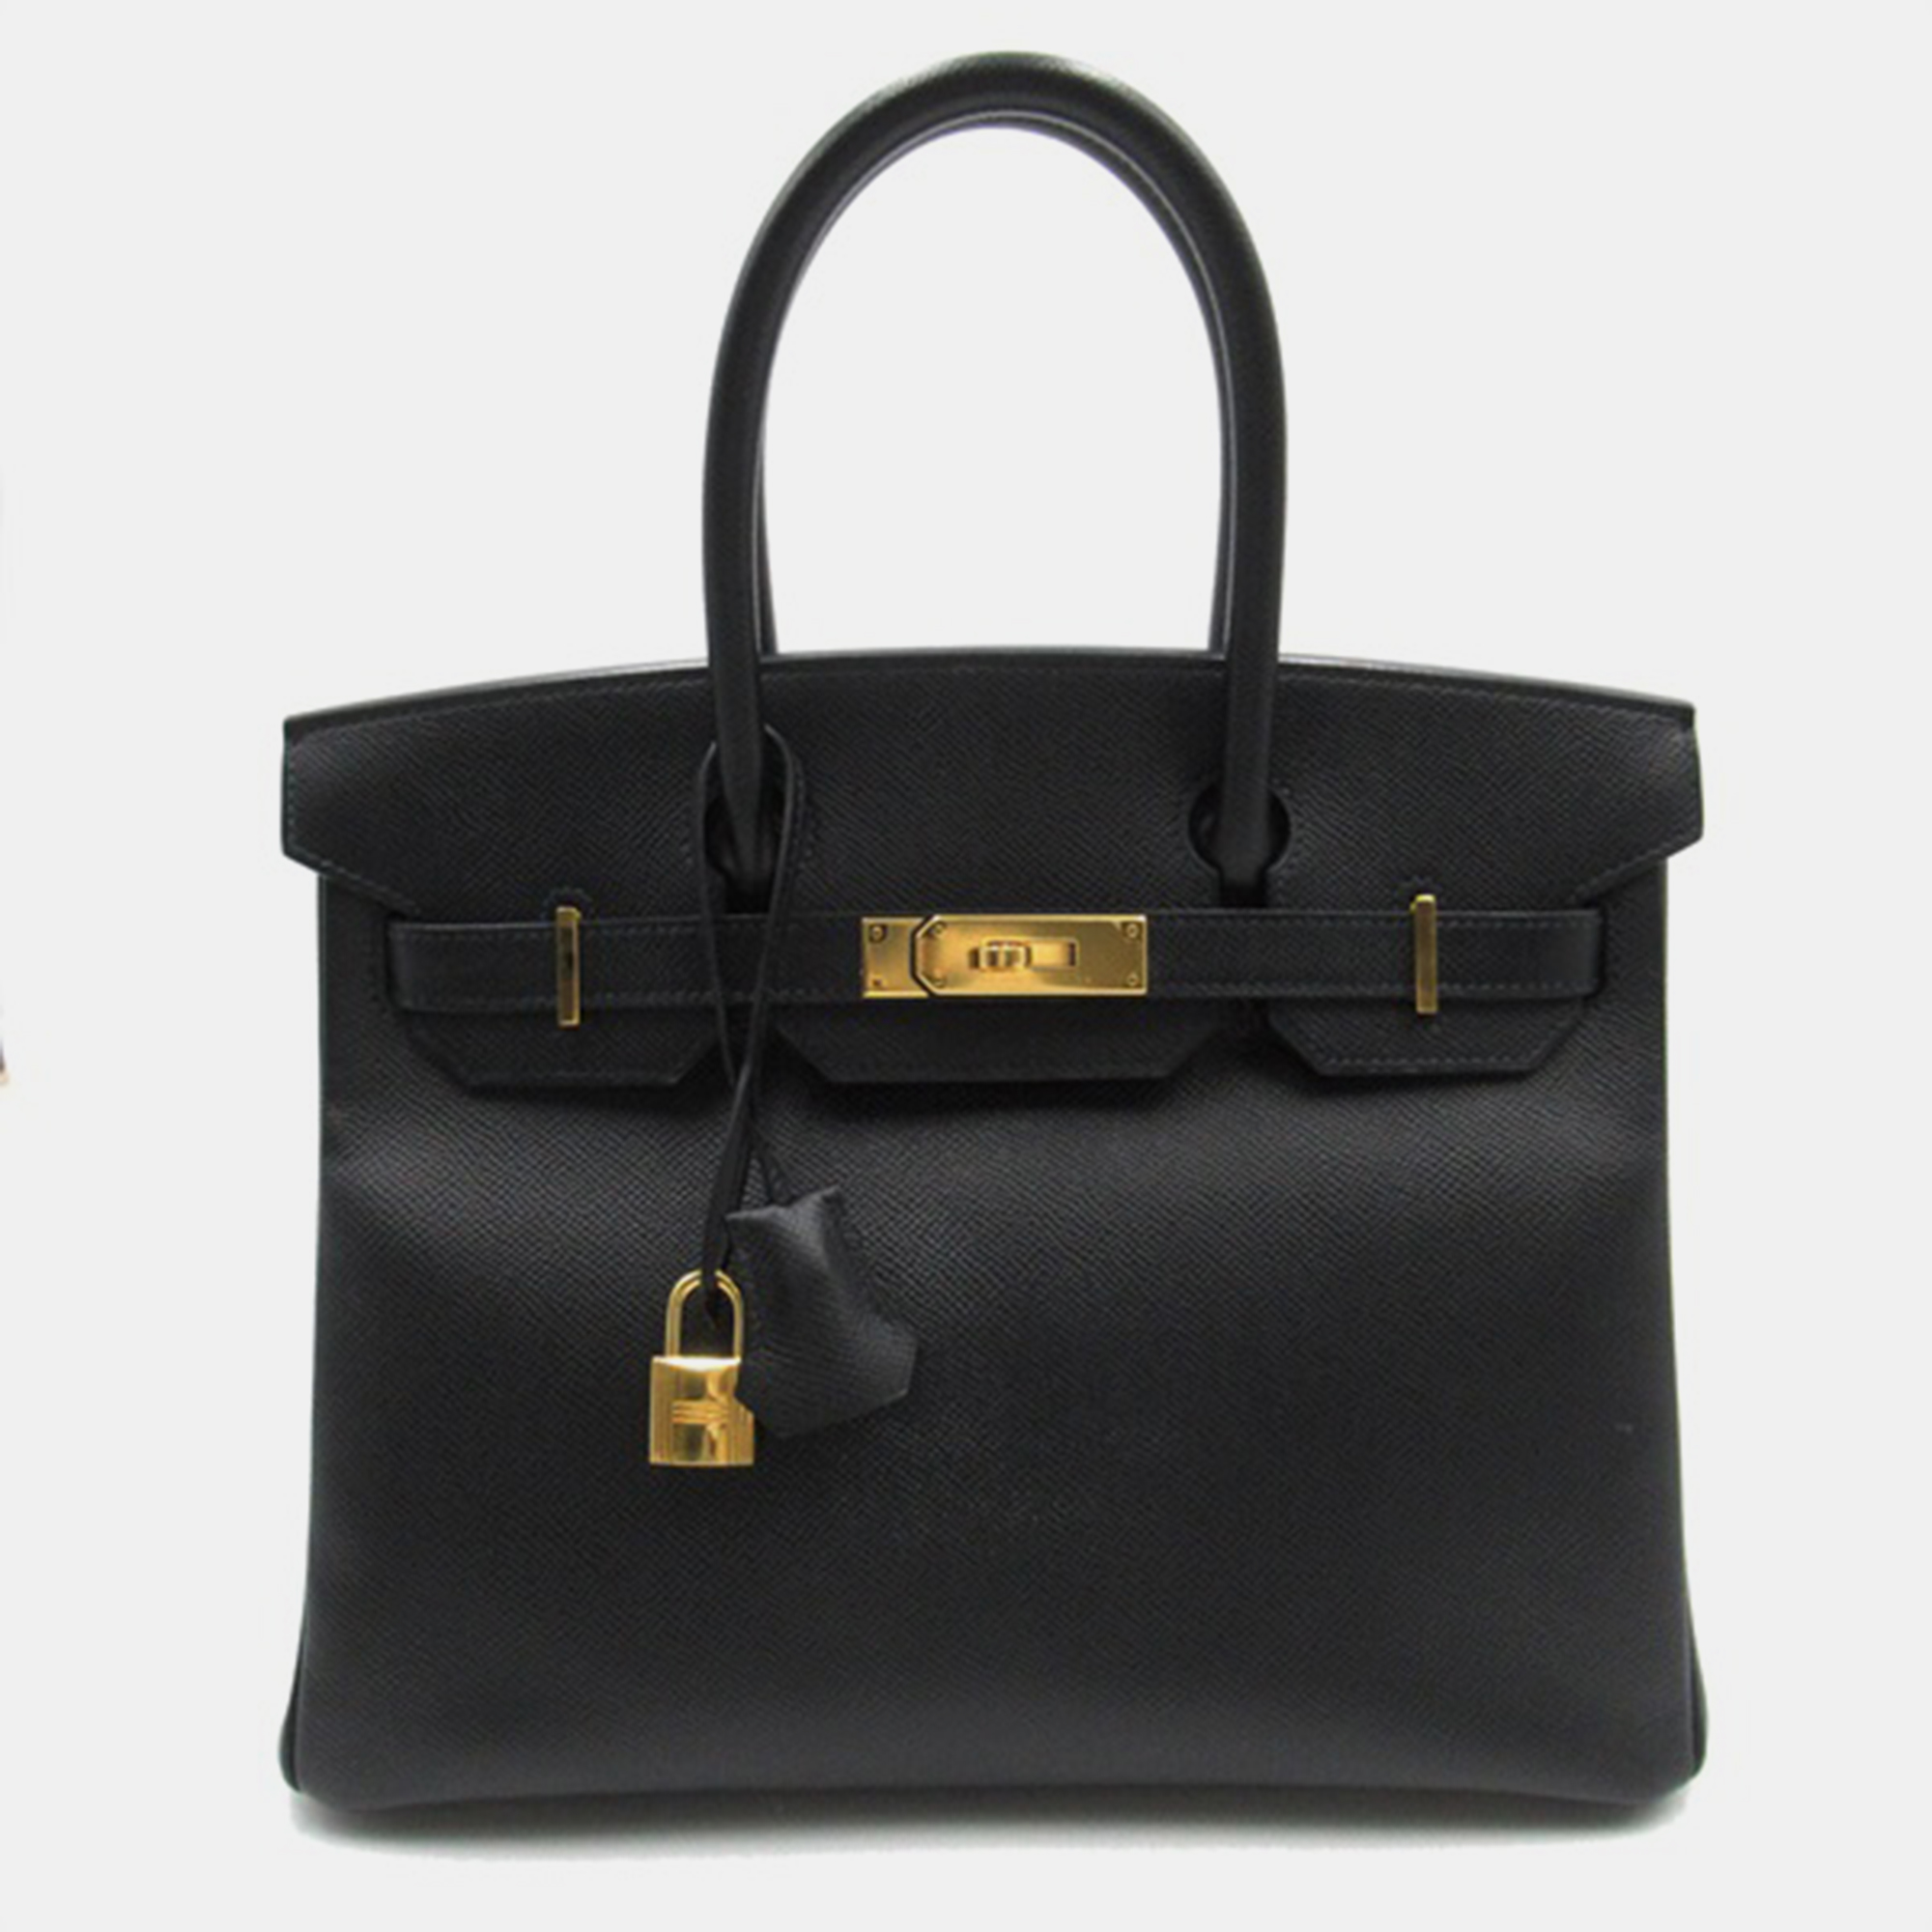 Hermes Black Togo Leather Birkin 30 Tote Bag